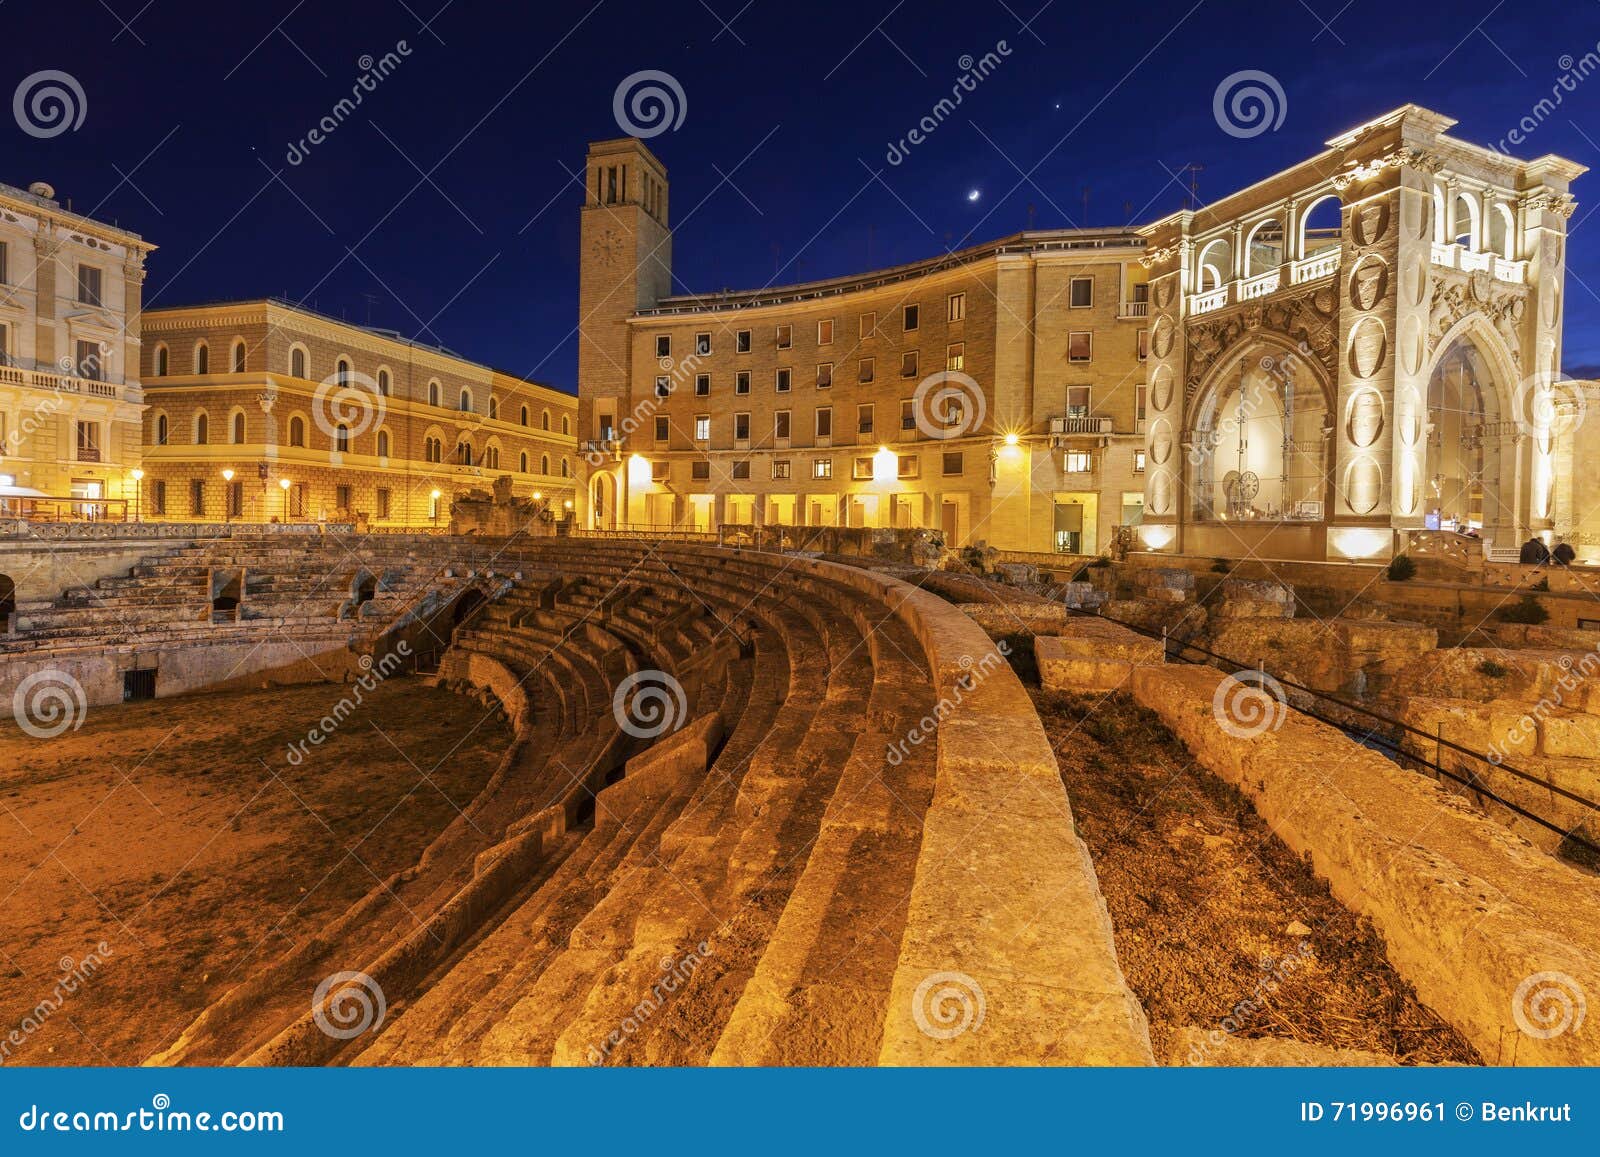 piazza santo oronzo and anfiteatro romano in lecce